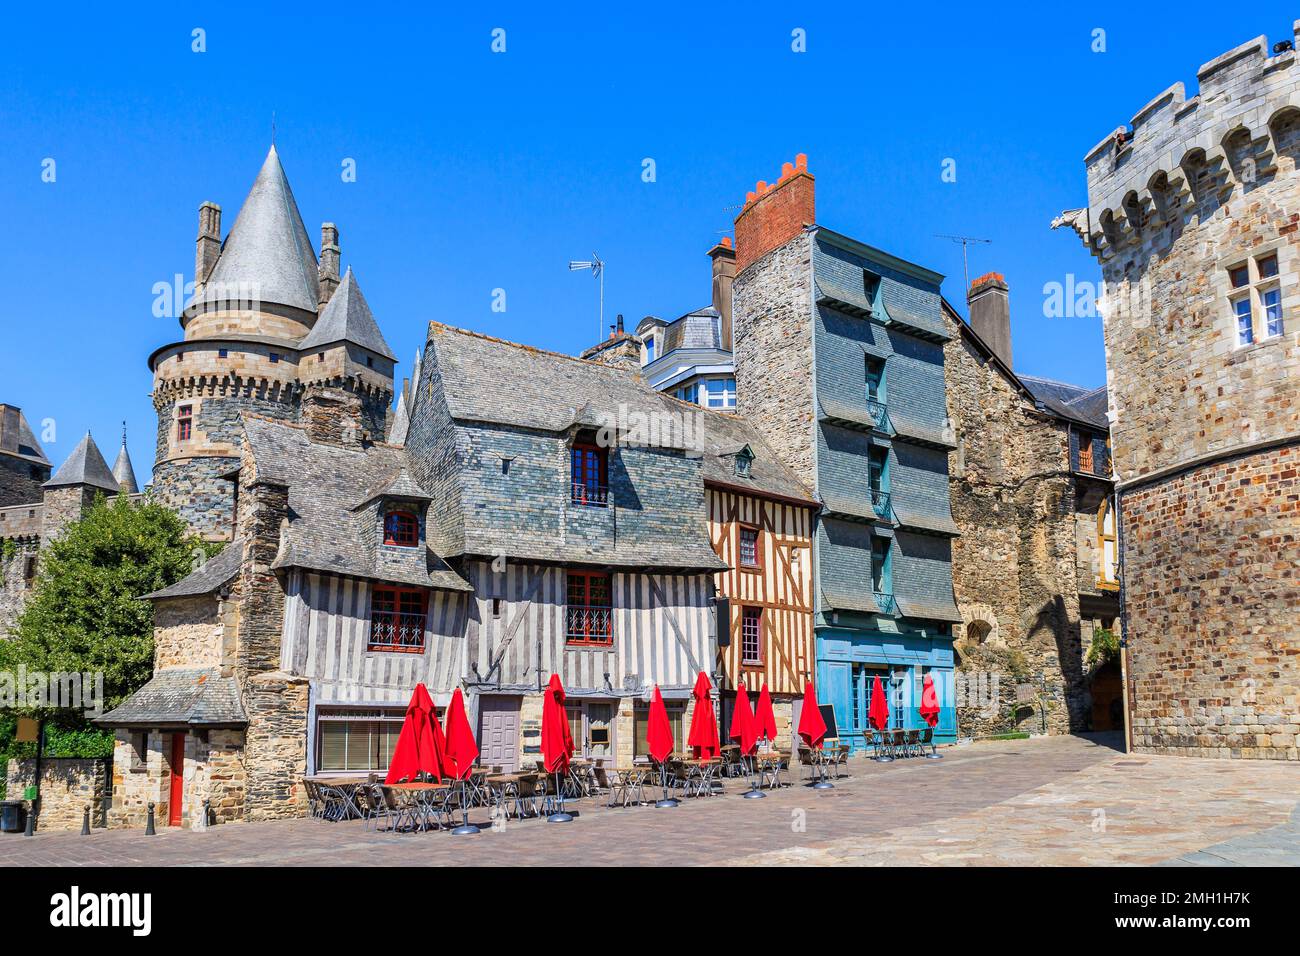 Wunderschöne Aussicht auf die mittelalterliche Stadt Vitre mit dem berühmten Chateau de Vitre am Place Saint-Yves. Brittany, Frankreich. Stockfoto